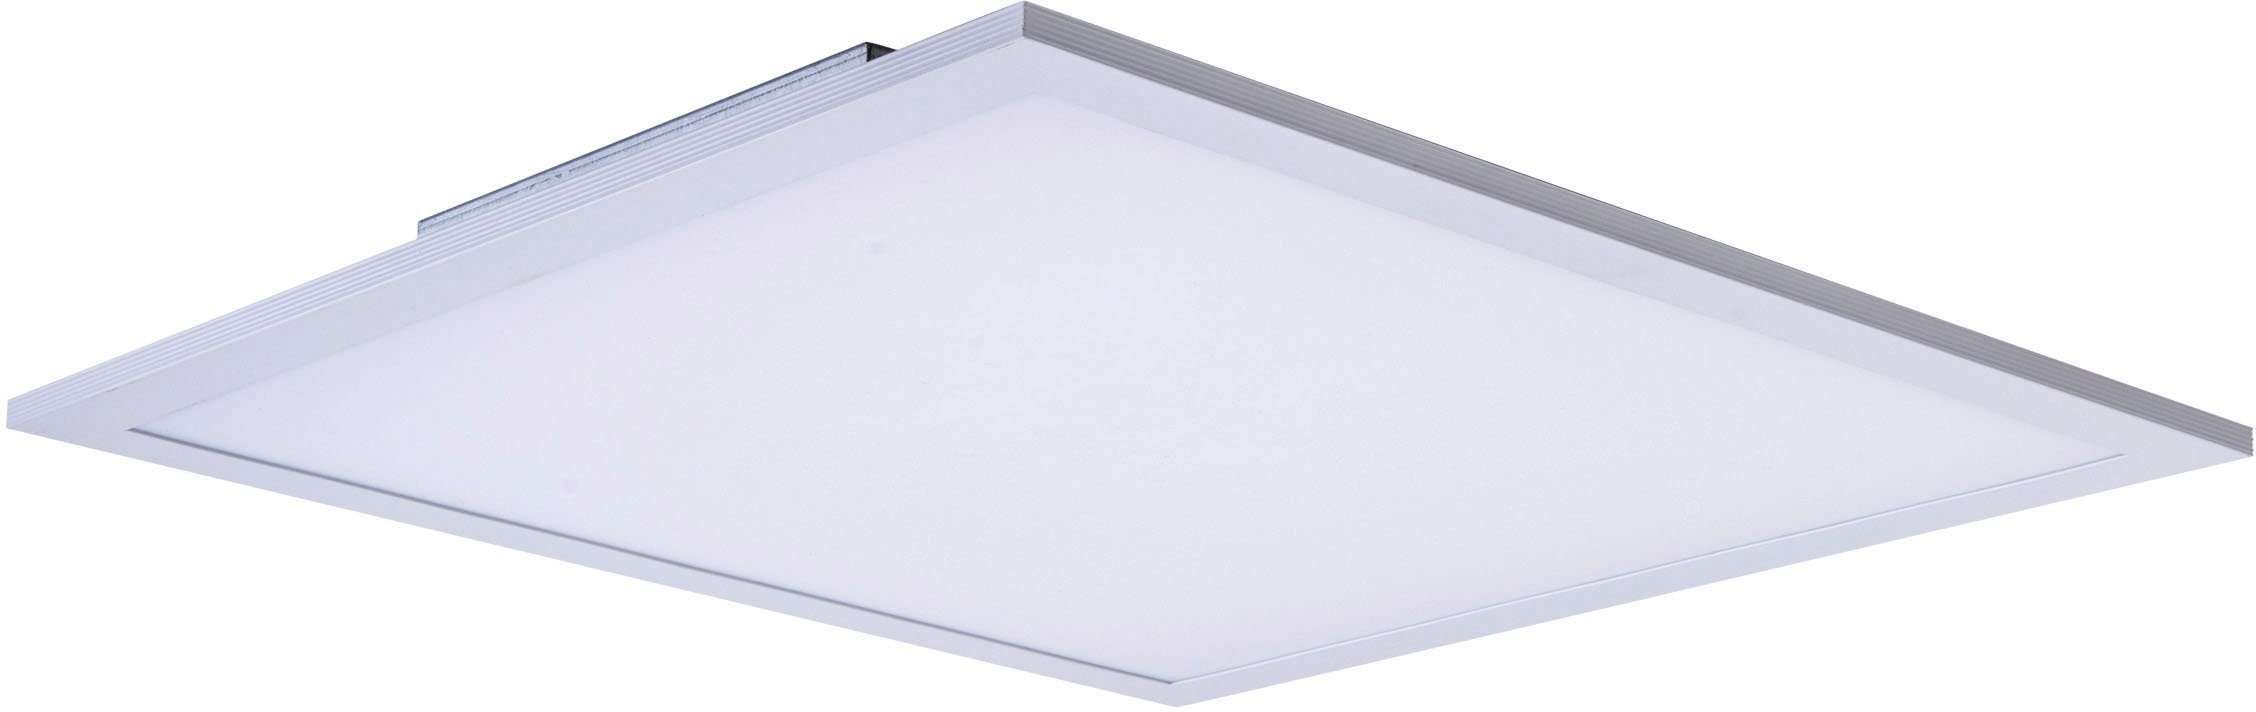 näve LED Panel 120 integriert, H: Nicola, neutralweiß LED Neutralweiß, LED, Lichtfarbe Aufbaupanel weiß 45x45cm, 6cm, fest